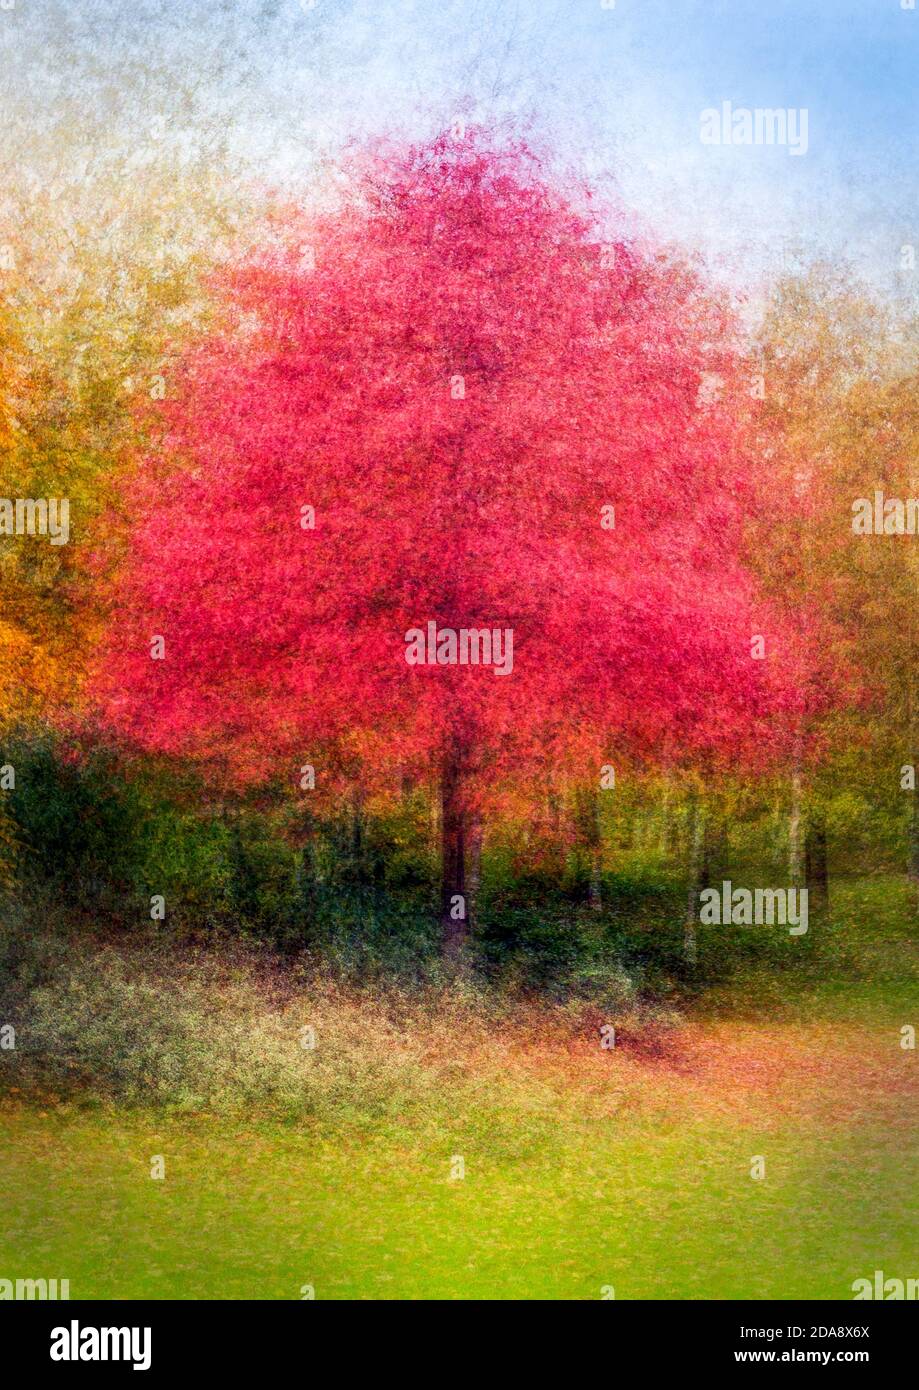 Ahornbaum im herbstlichen Laub, künstlerisch, impressionistisch aufgenommen Stockfoto